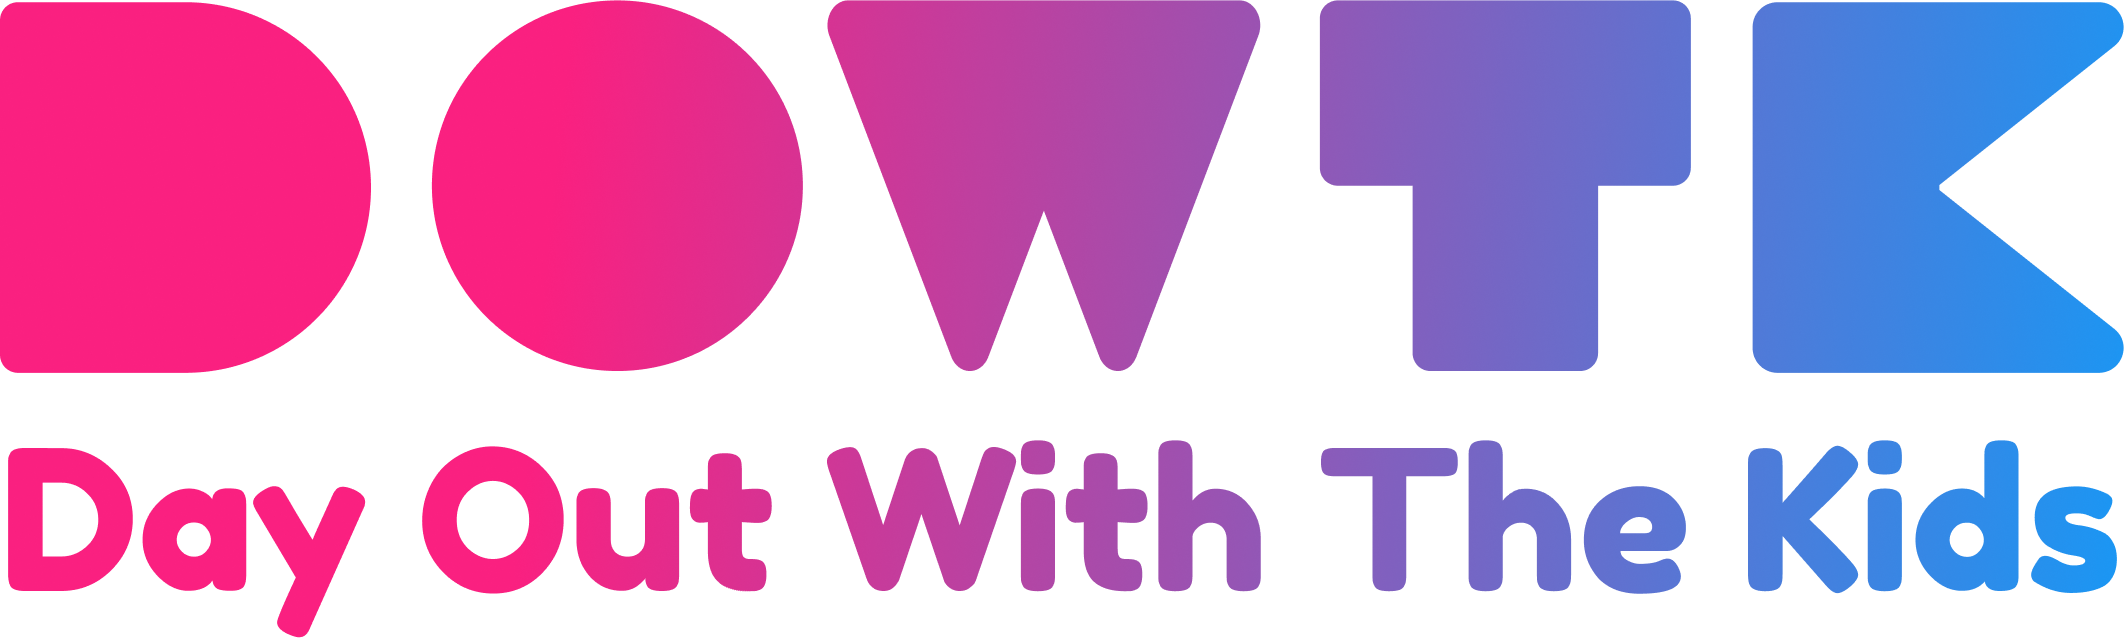 dayoutwiththekids logo